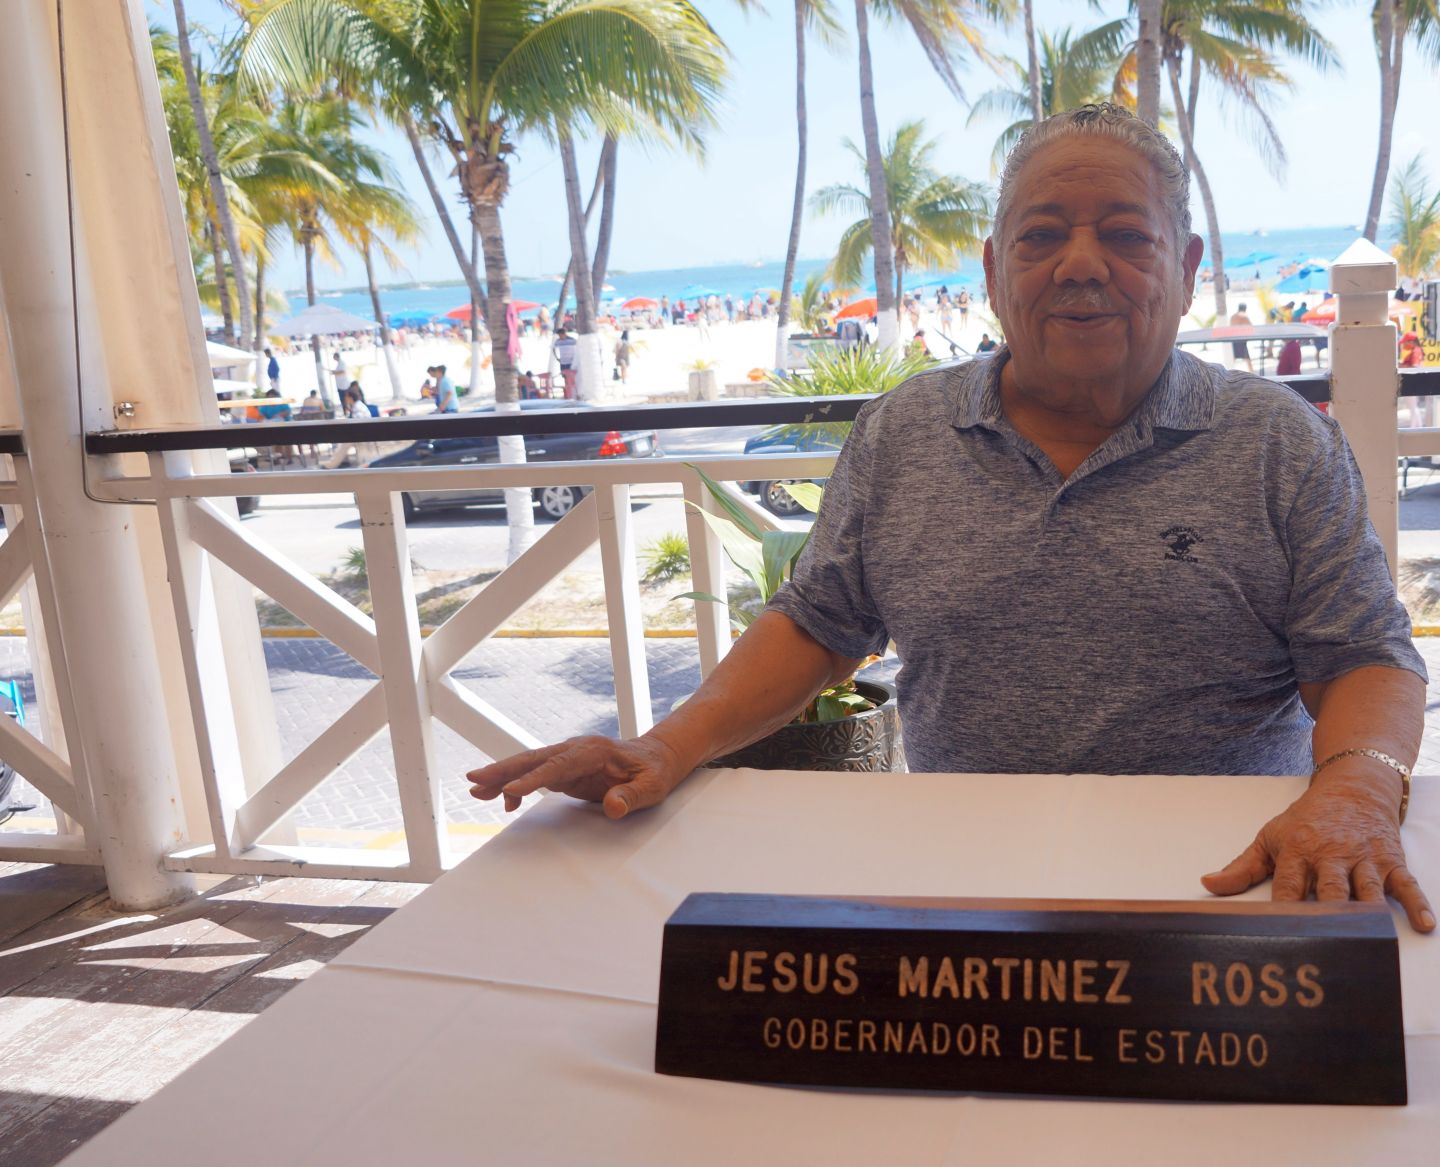 El próximo gobernador de Quintana Roo será un senador o alguien, hombre o mujer, del gabinete de Carlos Joaquín